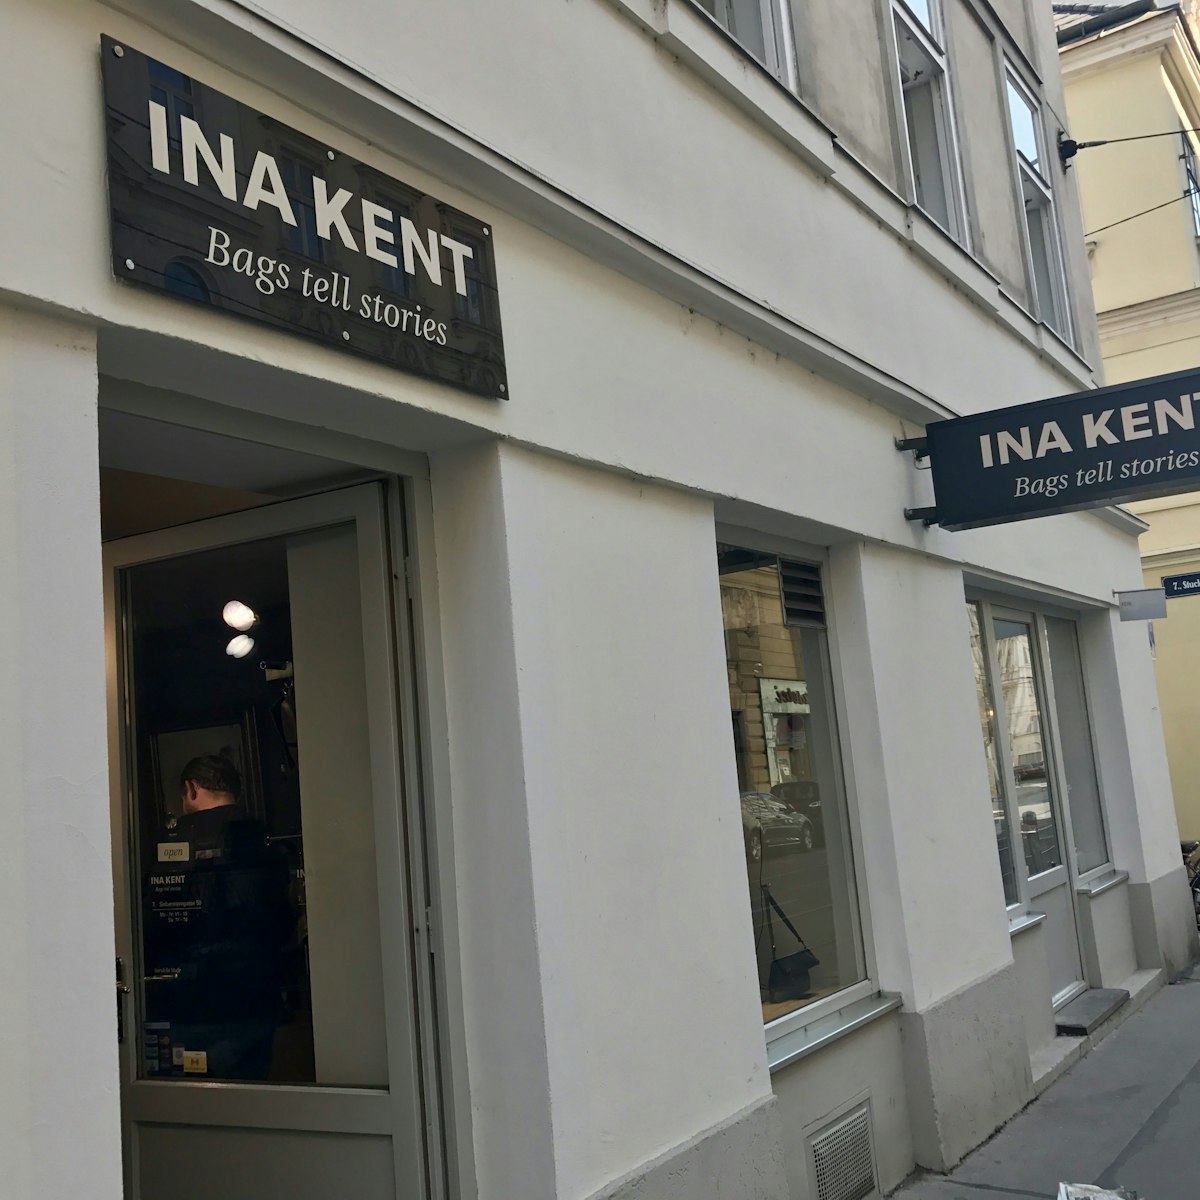 Ina Kent handbag store entrance, Vienna